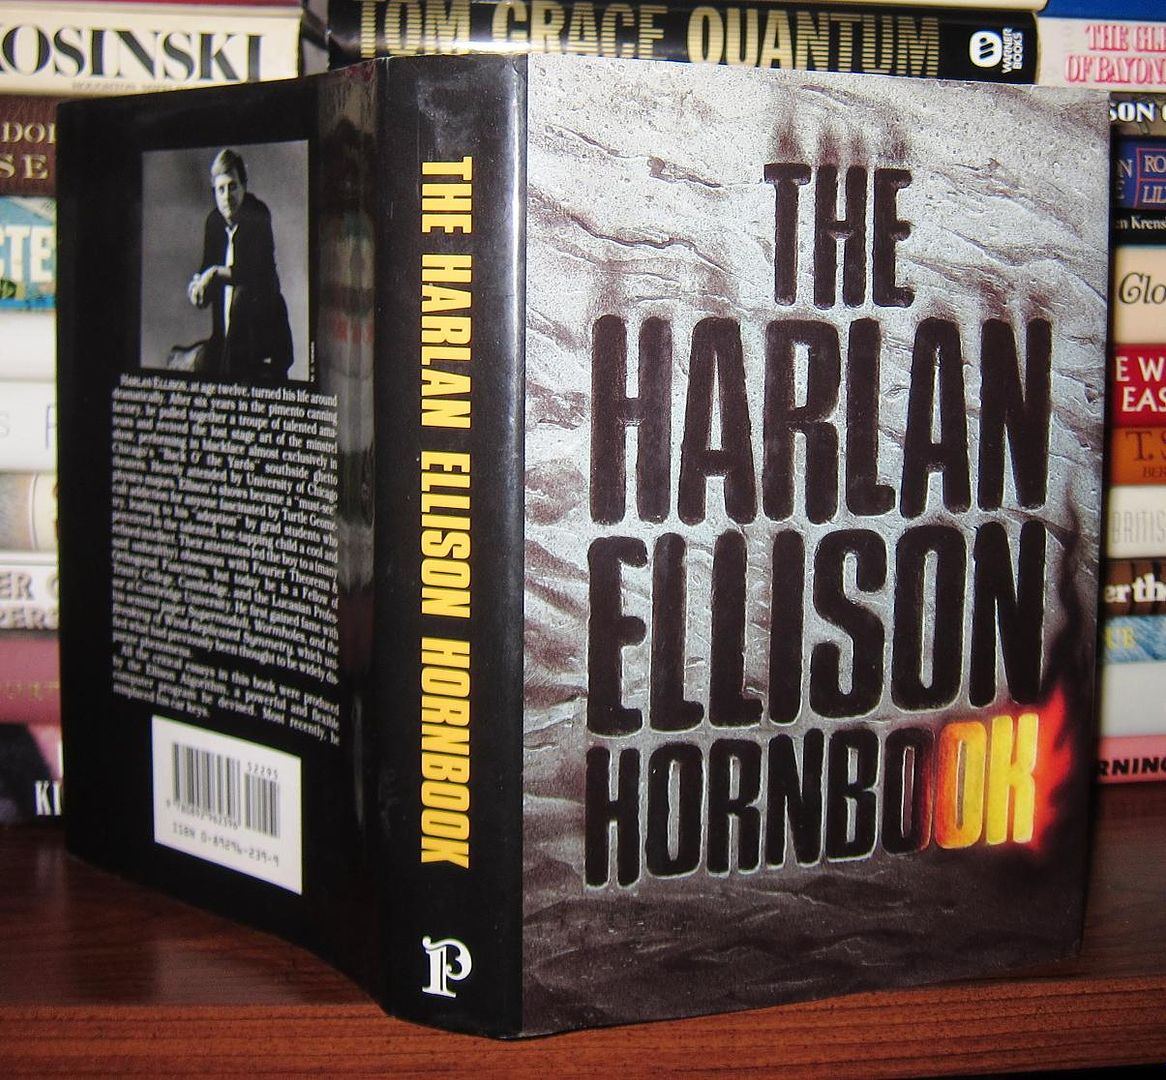 ELLISON, HARLAN - The Harlan Ellison Hornbook